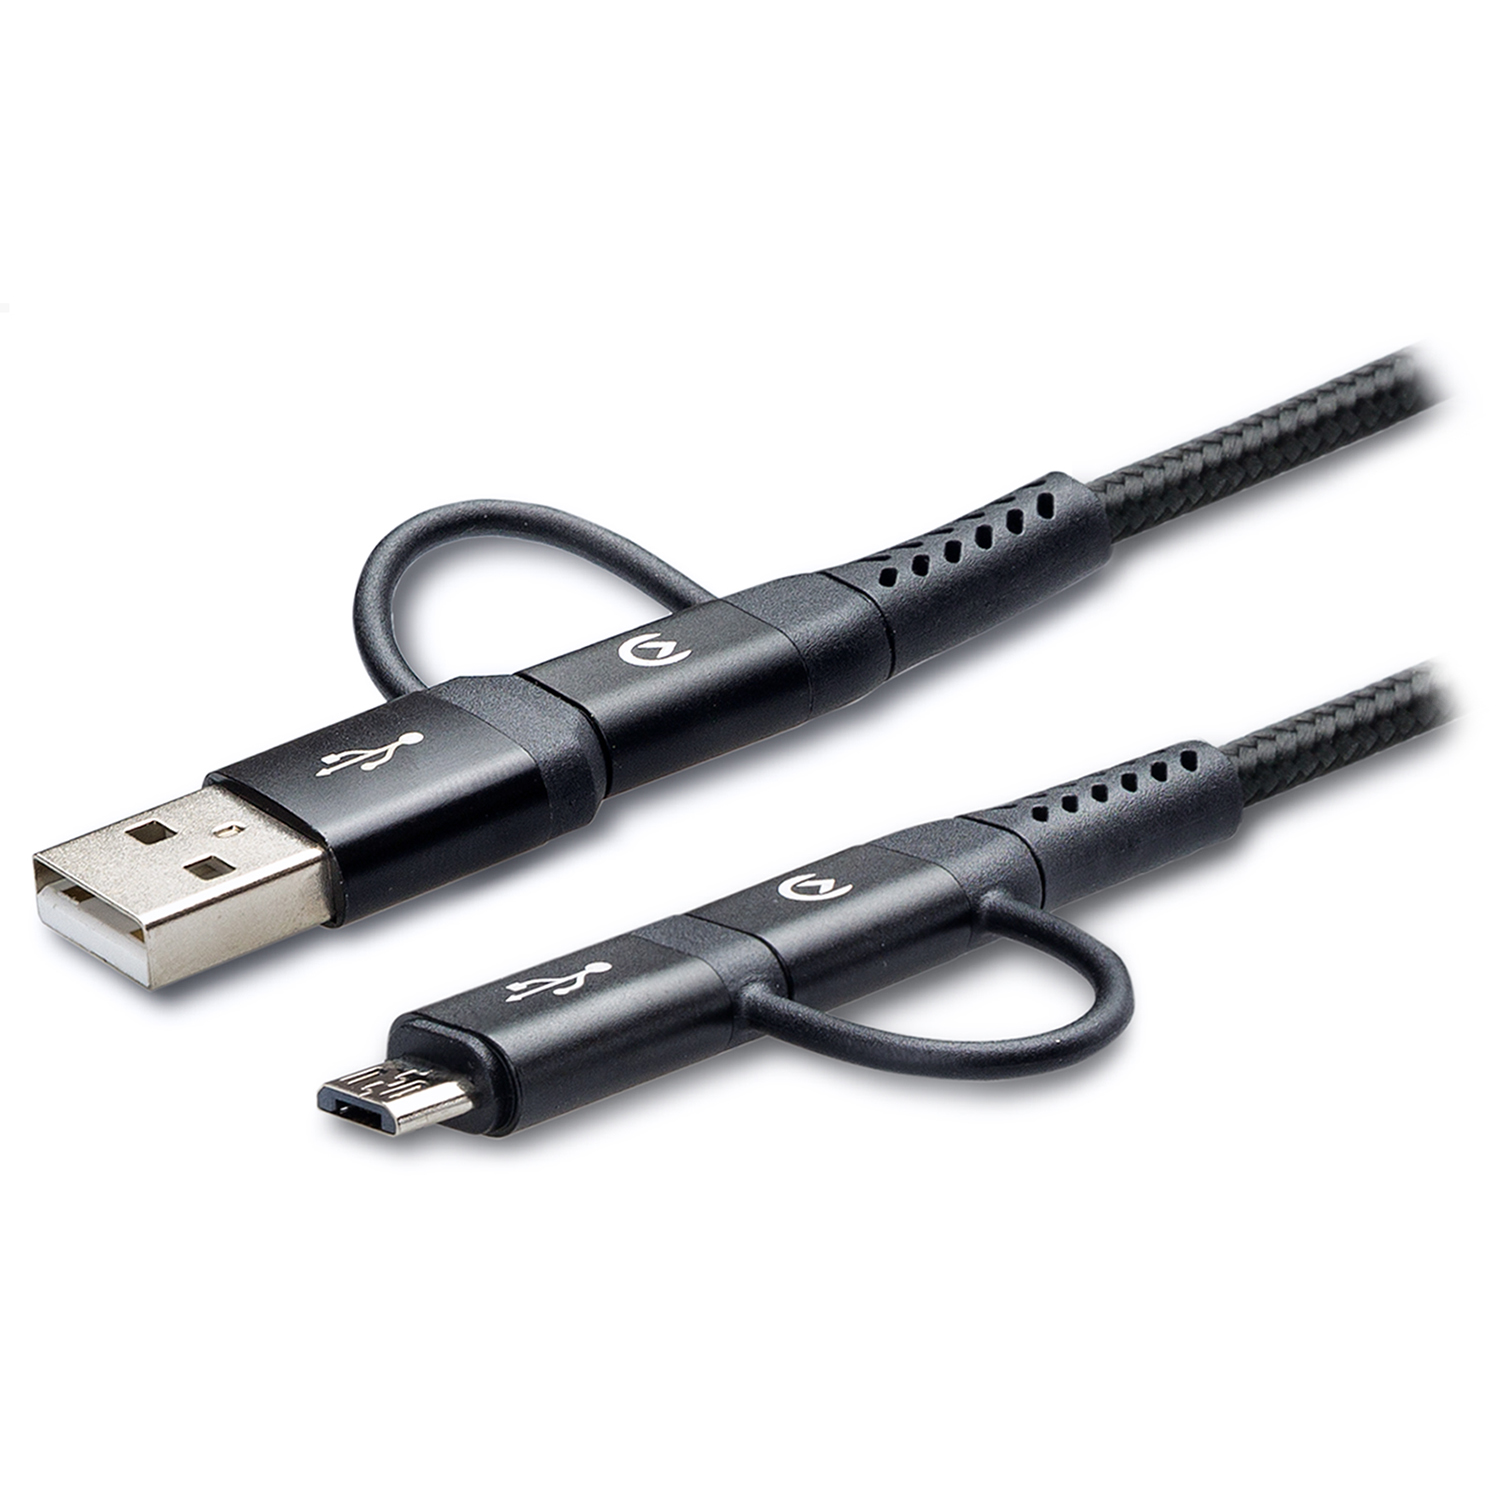 Mobilize Nylon Kabel 4in1 USB-C naar USB-C + Micro USB + USB-A 1.5 meter Zwart